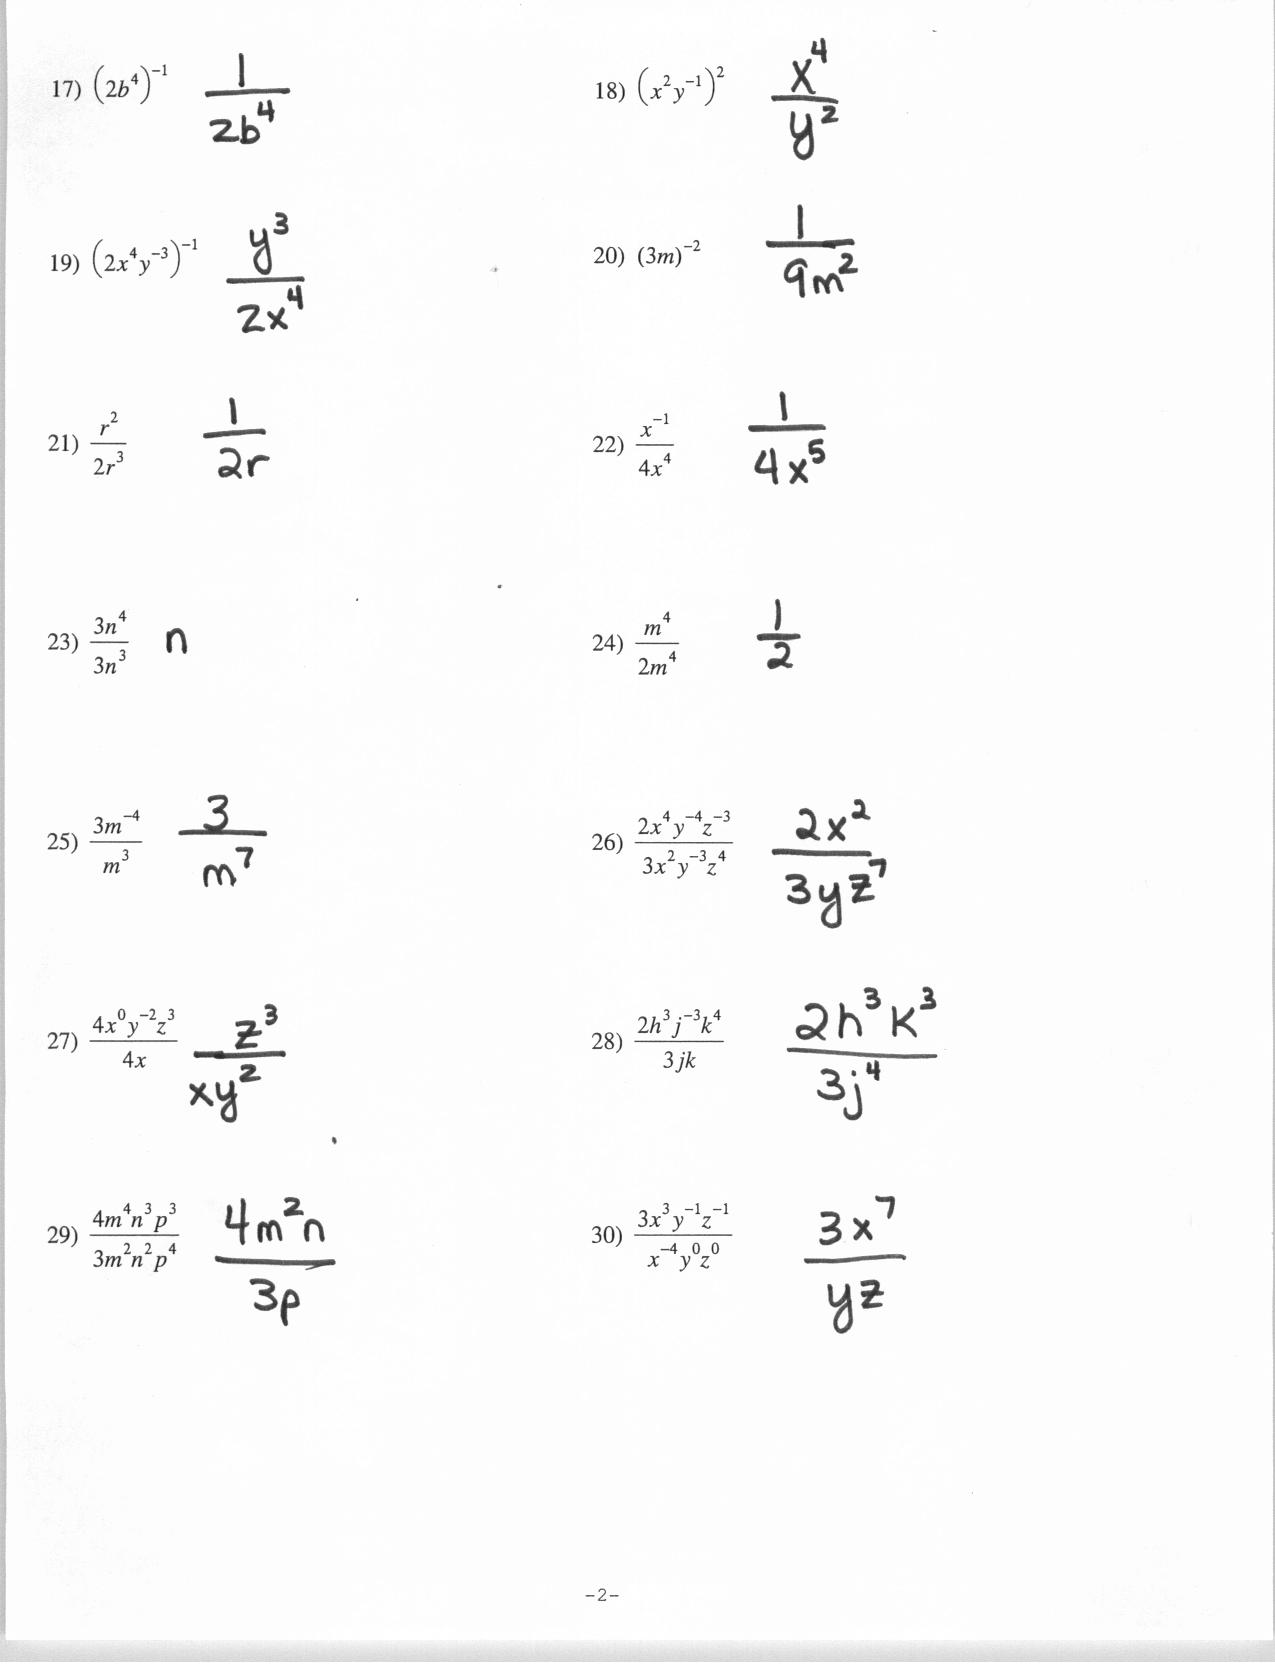 17-simplifying-radicals-math-worksheets-worksheeto